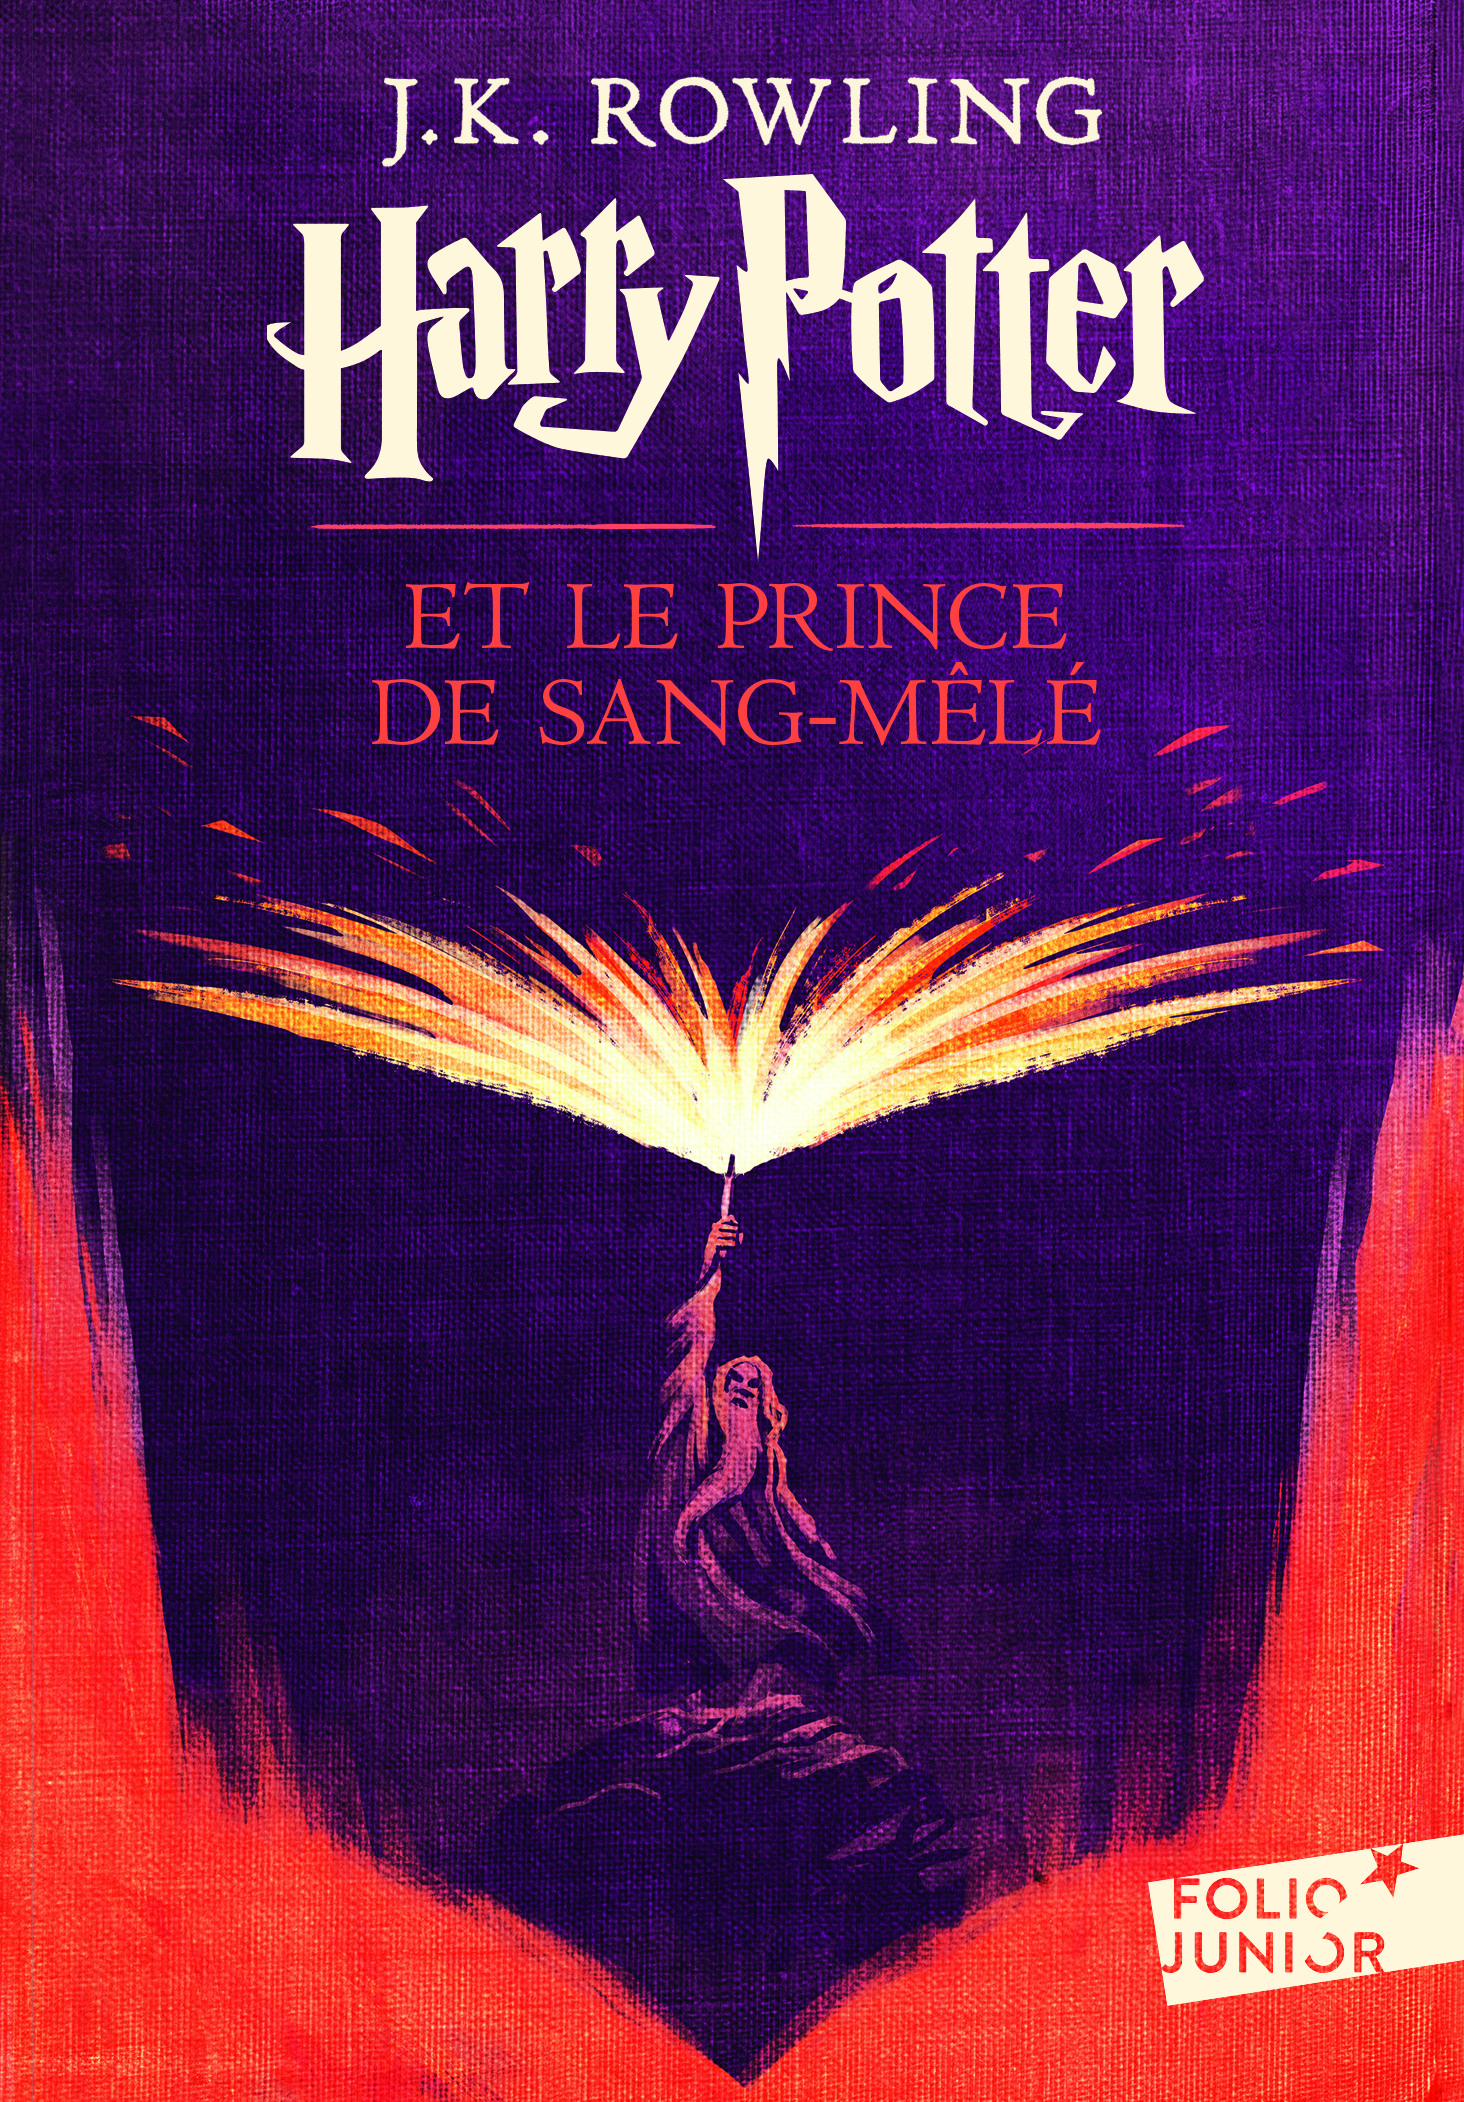 Harry Potter et le Prince de Sang-Mele (2017) / Принц-полукровка